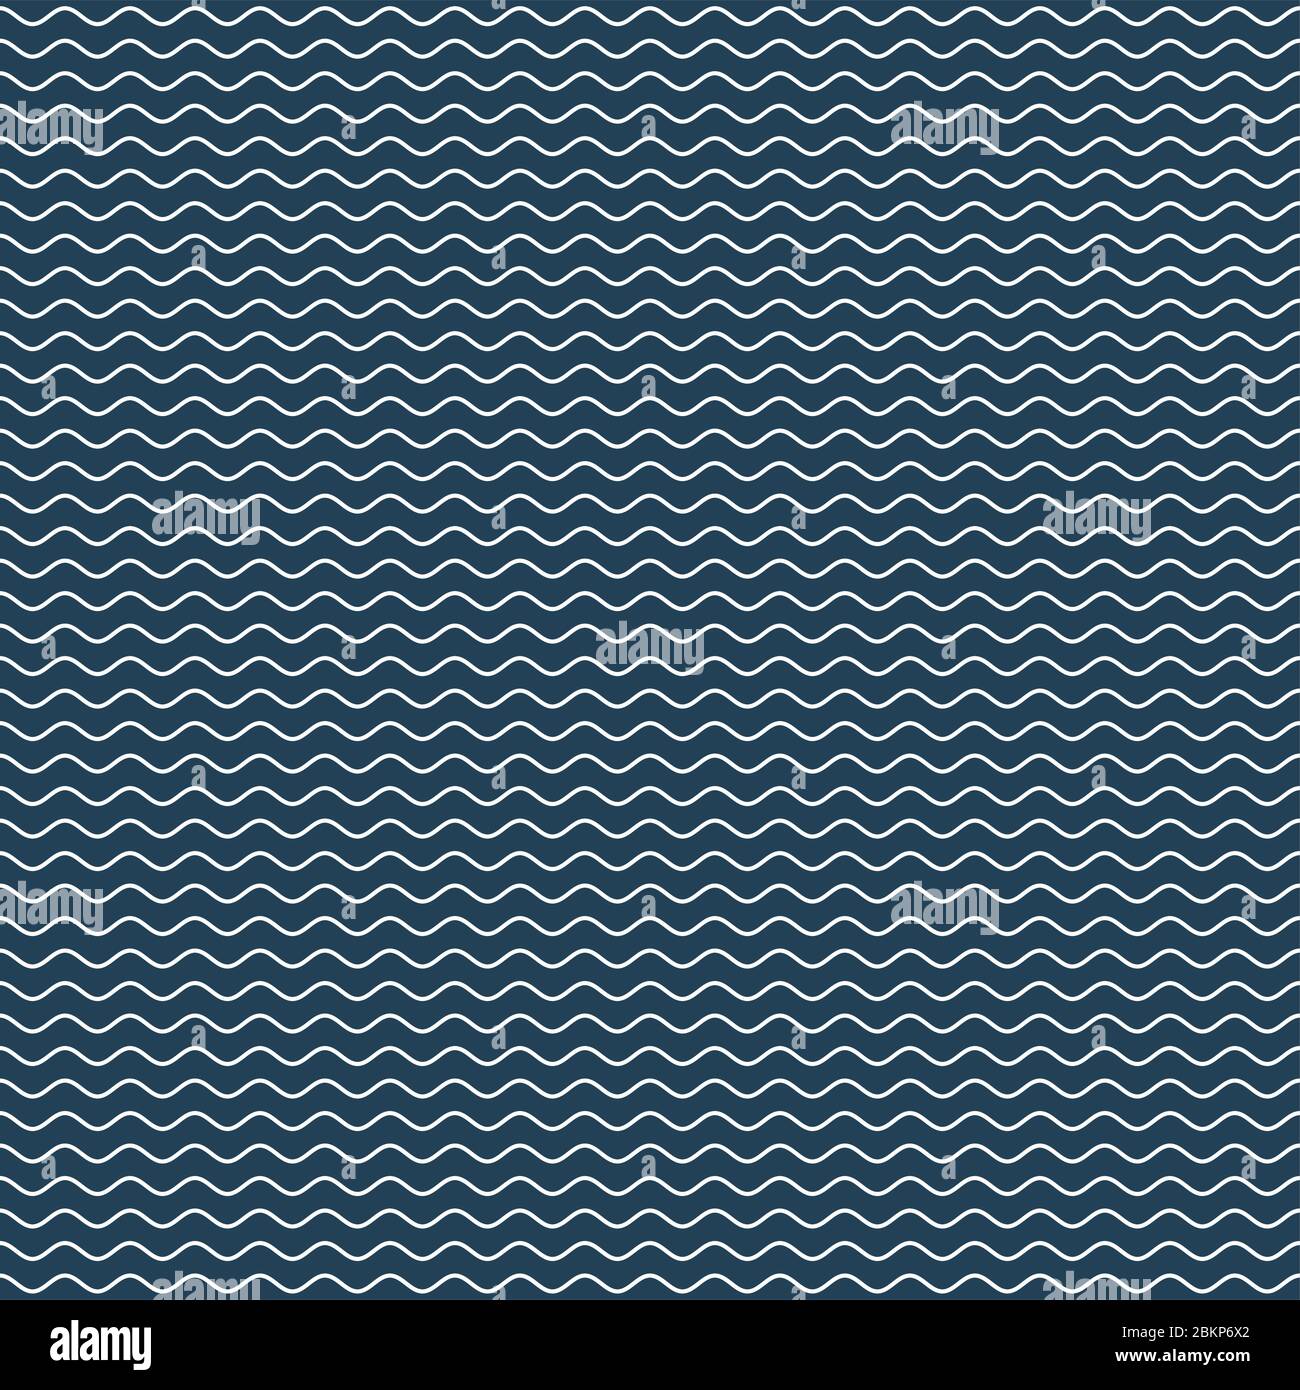 Wellenförmige Linie nahtloses Muster. Weiße Wellenlinien auf dunkelblauem Hintergrund. Welligkeit marine Textur. Vektorgrafiken für Wellenhaftigkeit. Stock Vektor